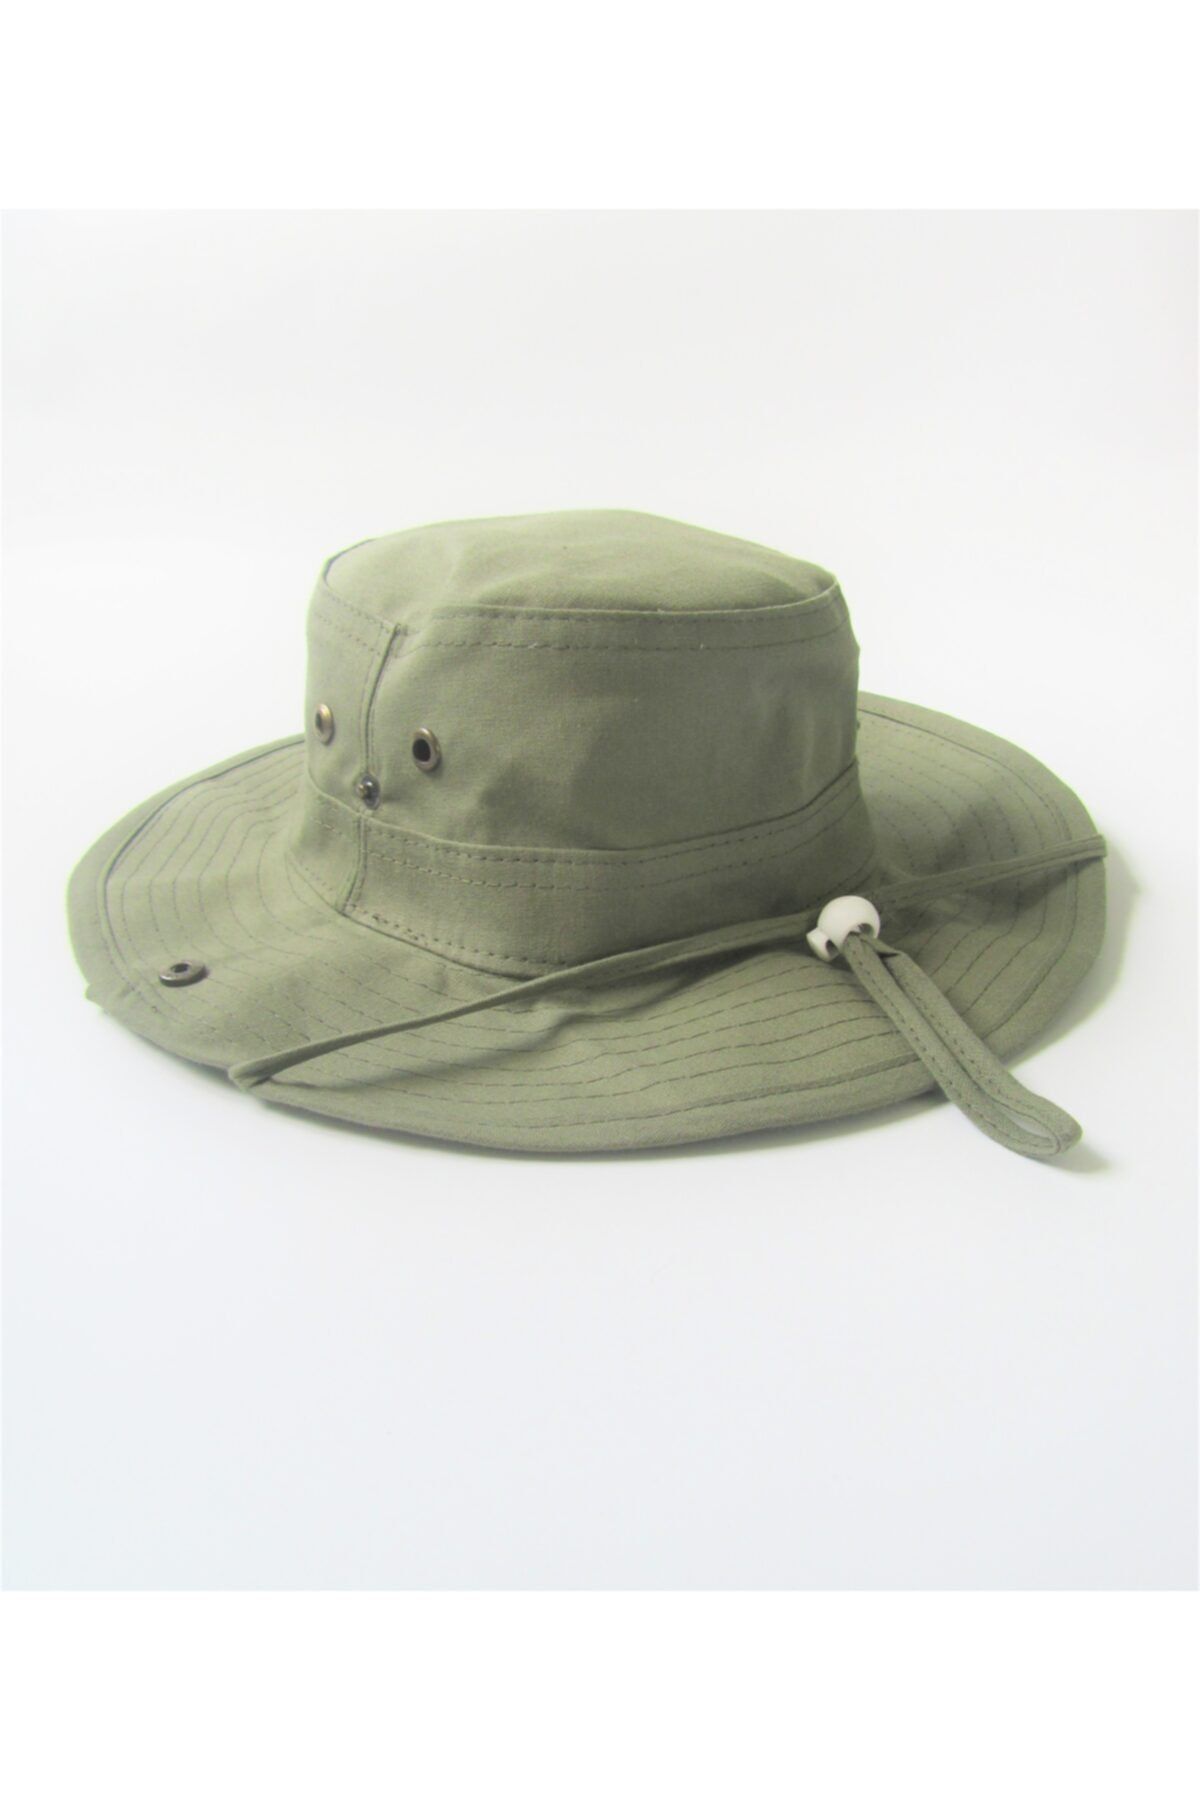 salarticaret Yazlık Katlanabilir Koyu Yeşil Safari Şapkası